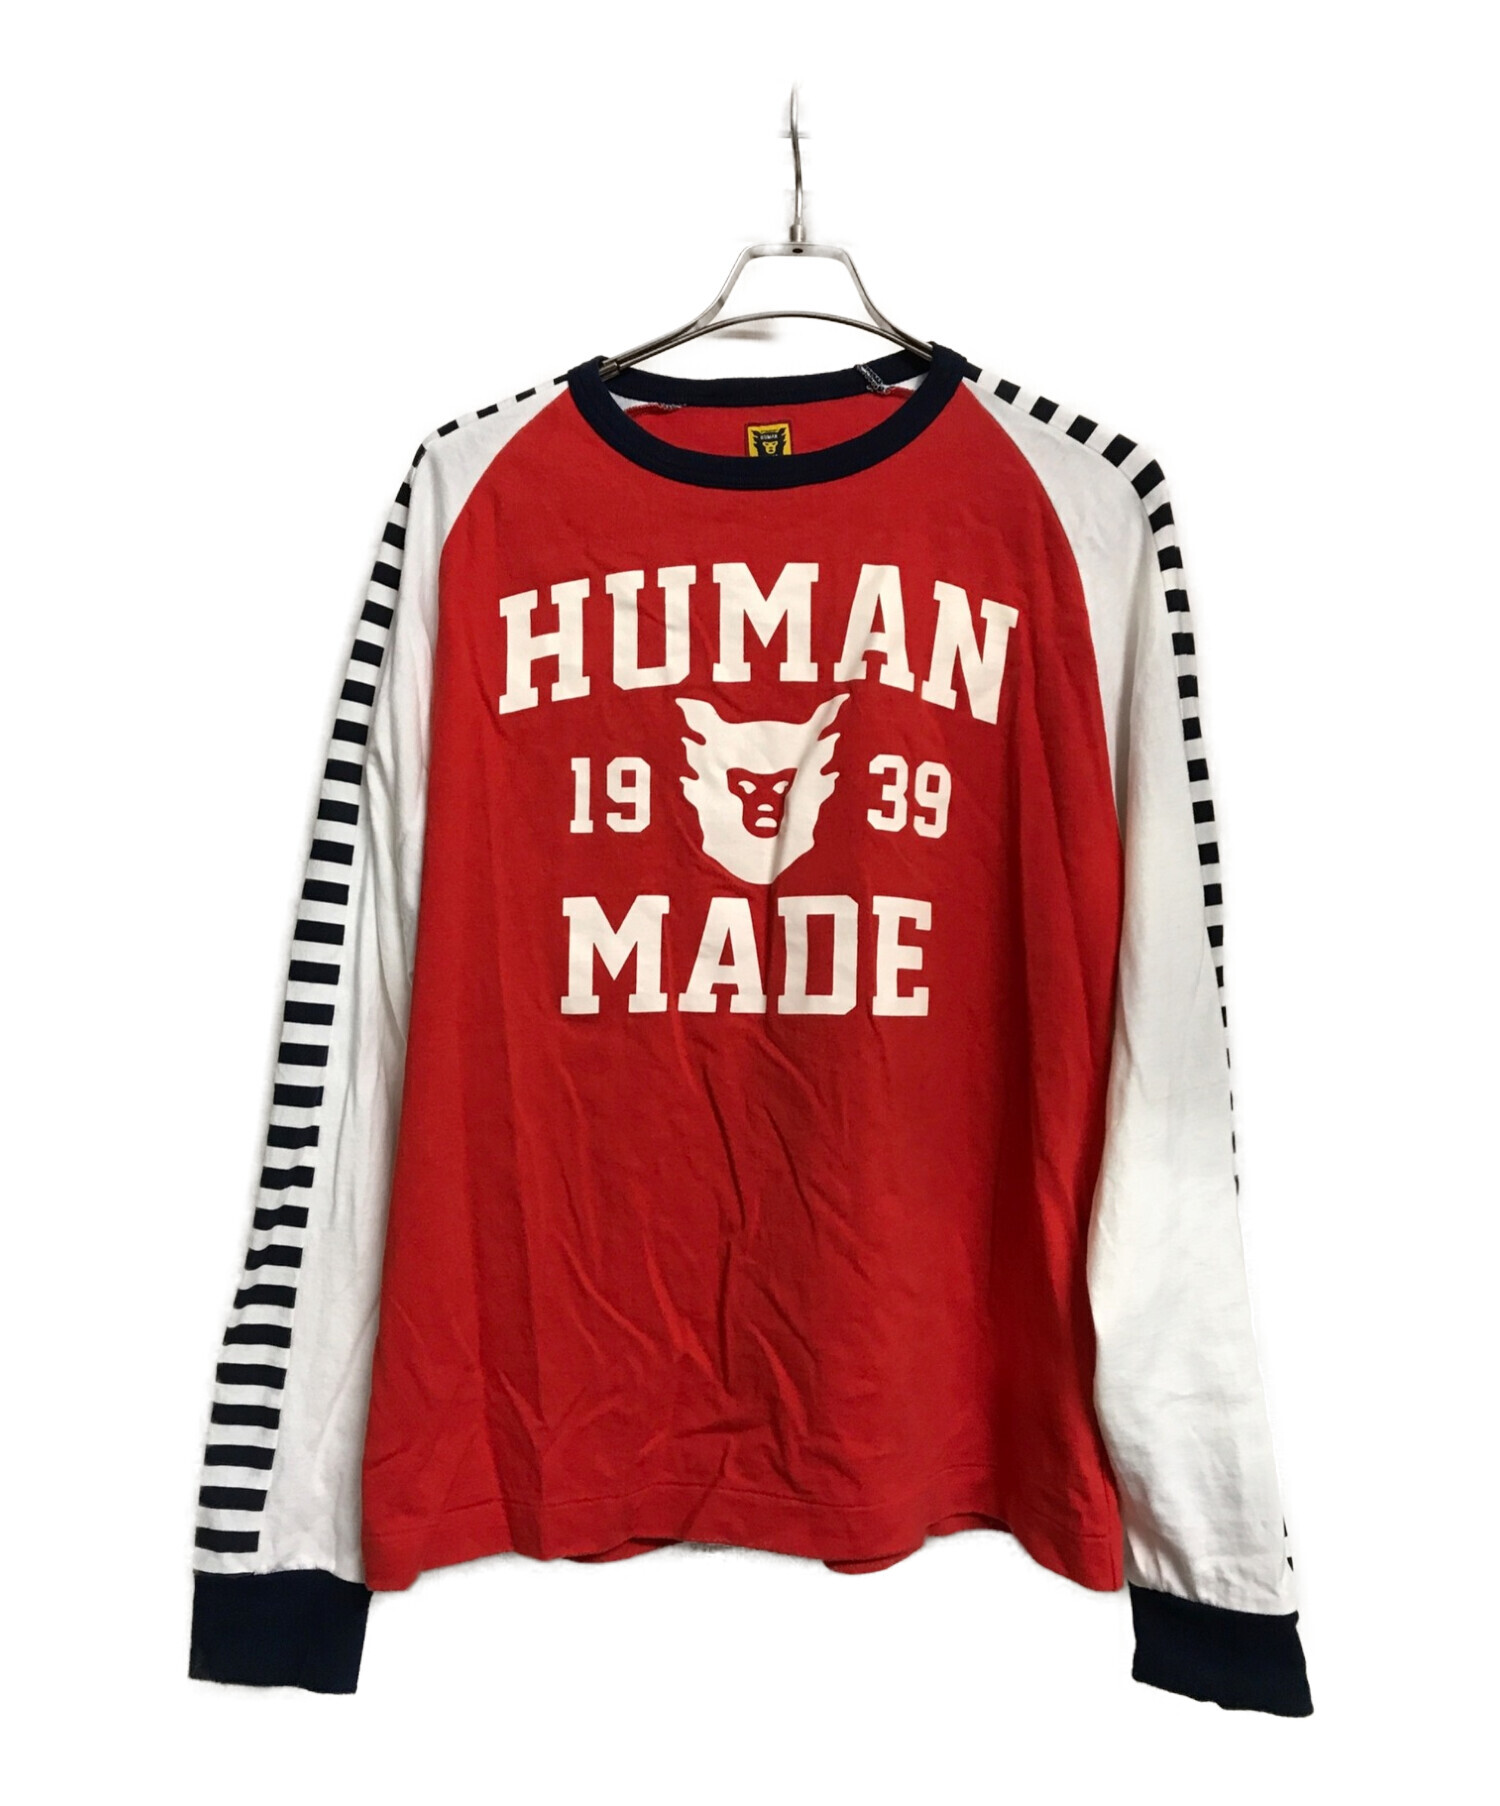 16450円セール 大阪 クリアランス特売 [R様専用] human made bmx shirt